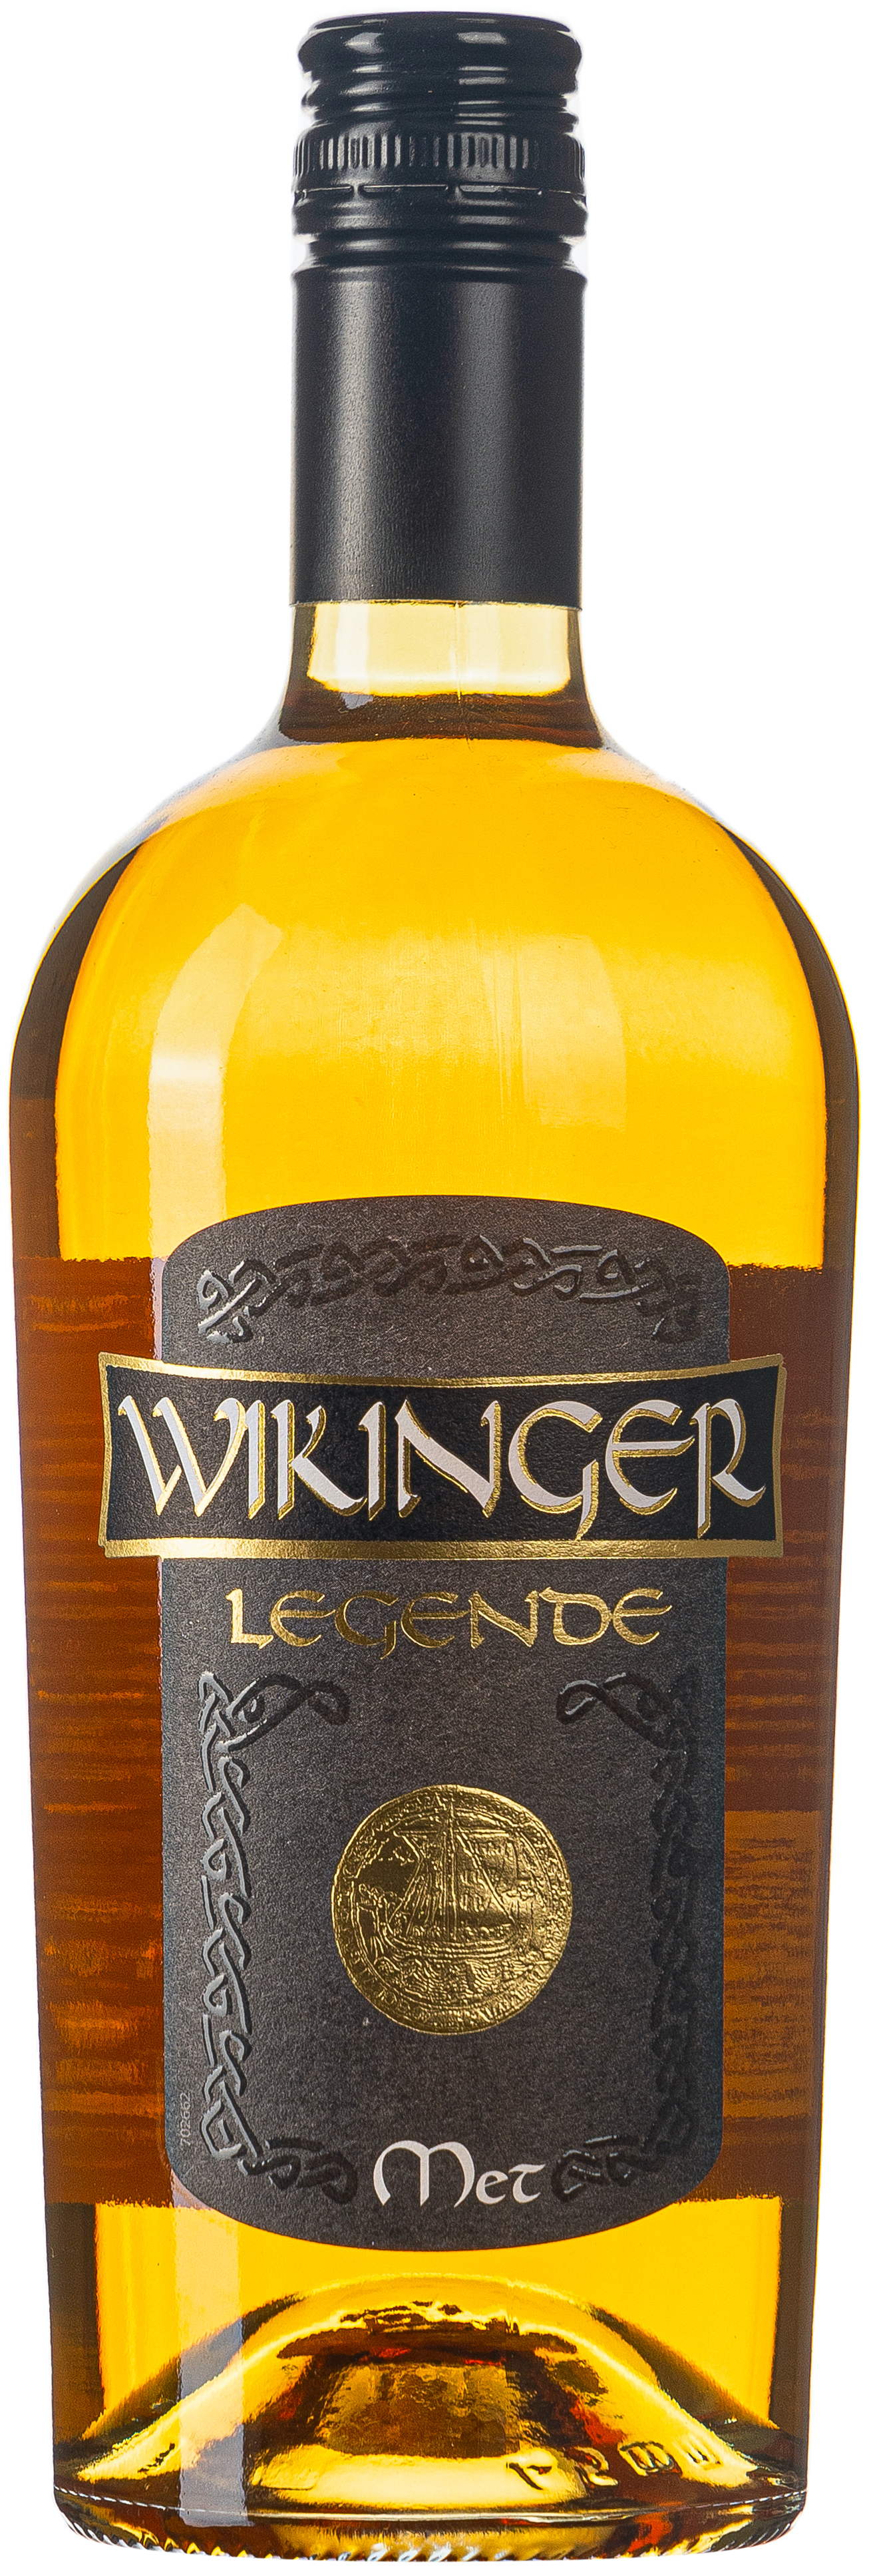 Wikinger Legende Met 10% vol. 0,75L 